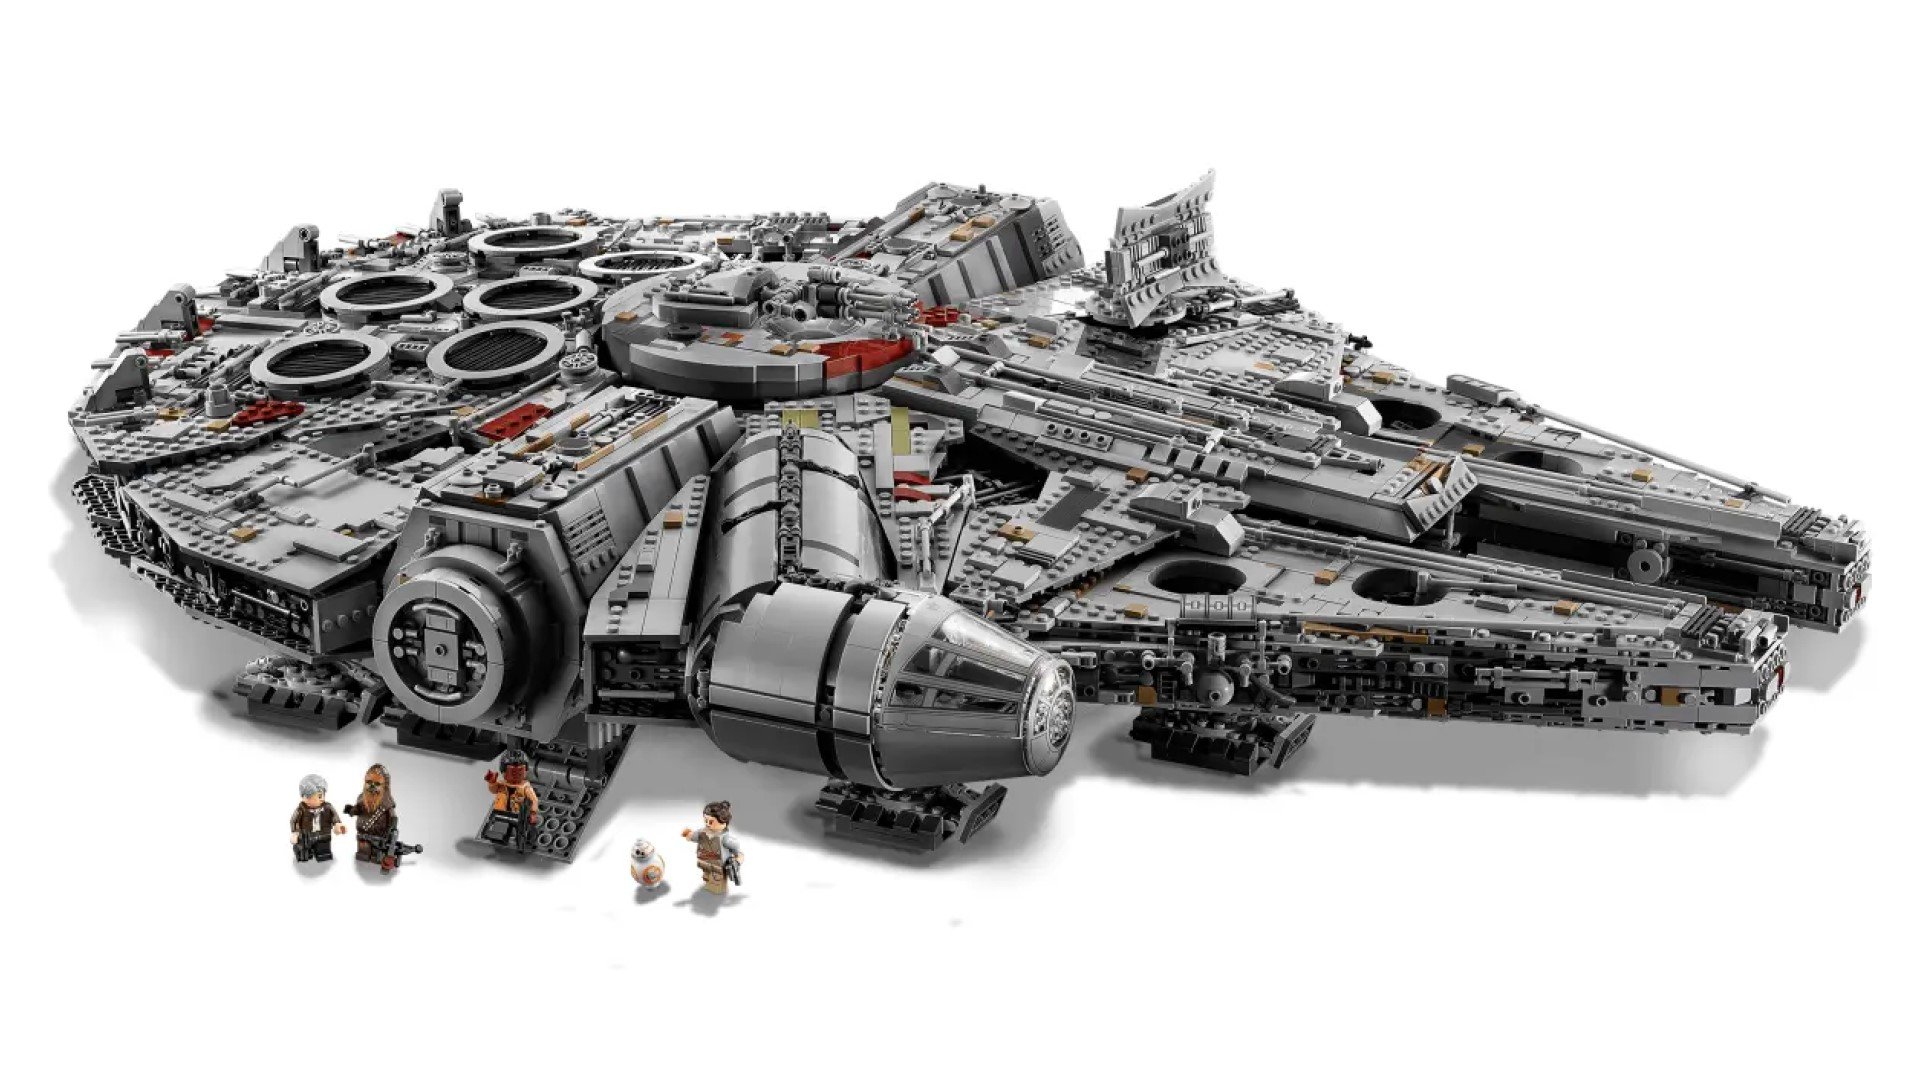 Best Lego sets: The Lego millenium falcon